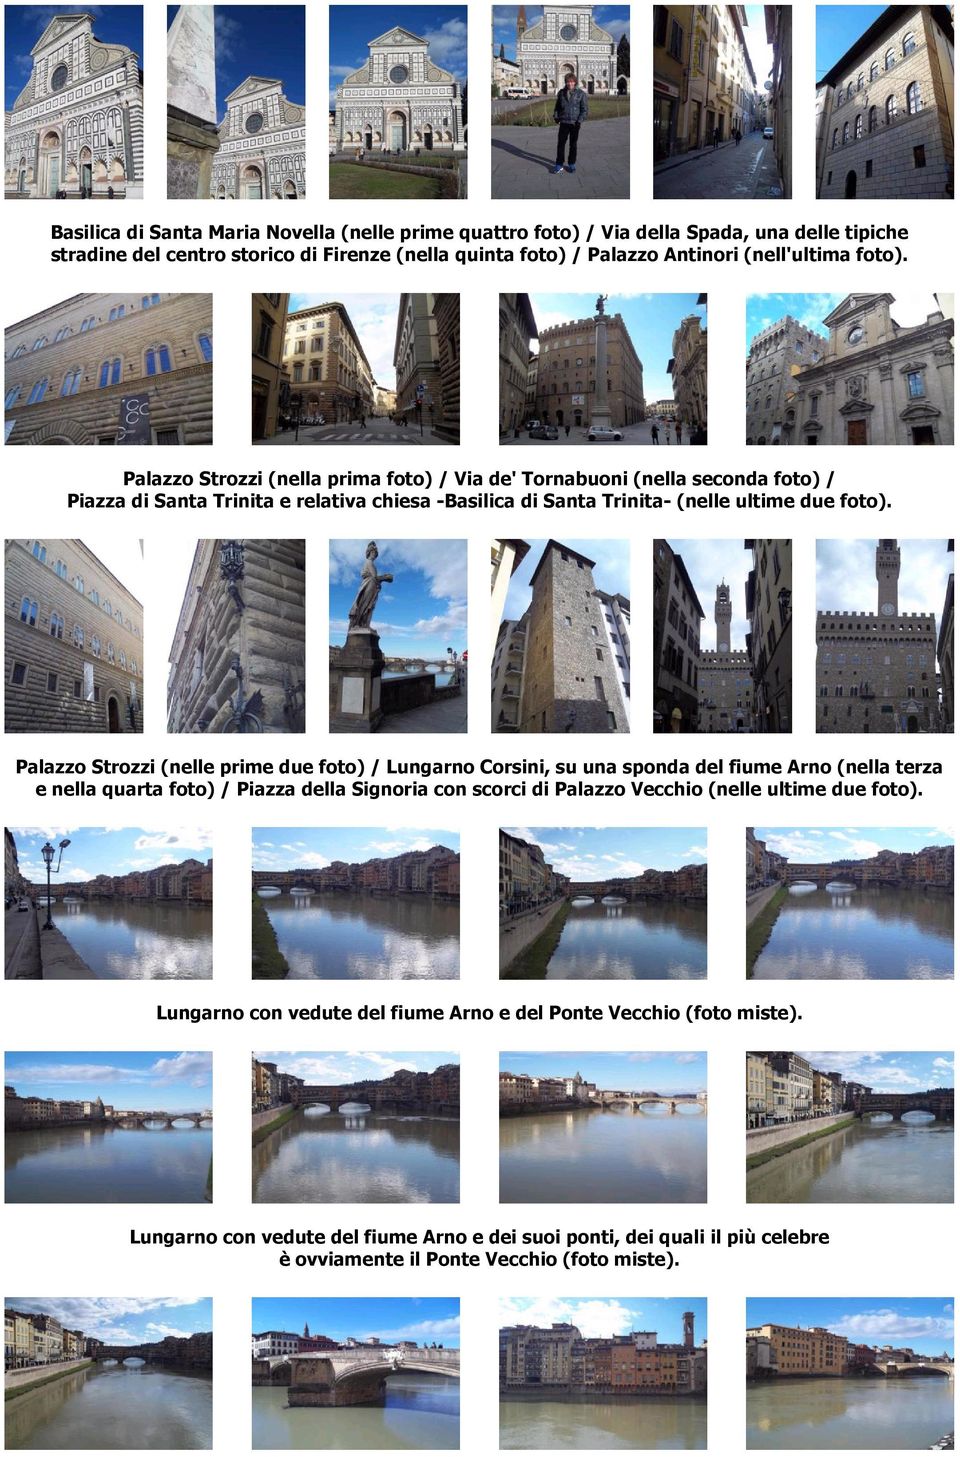 Palazzo Strozzi (nelle prime due foto) / Lungarno Corsini, su una sponda del fiume Arno (nella terza e nella quarta foto) / Piazza della Signoria con scorci di Palazzo Vecchio (nelle ultime